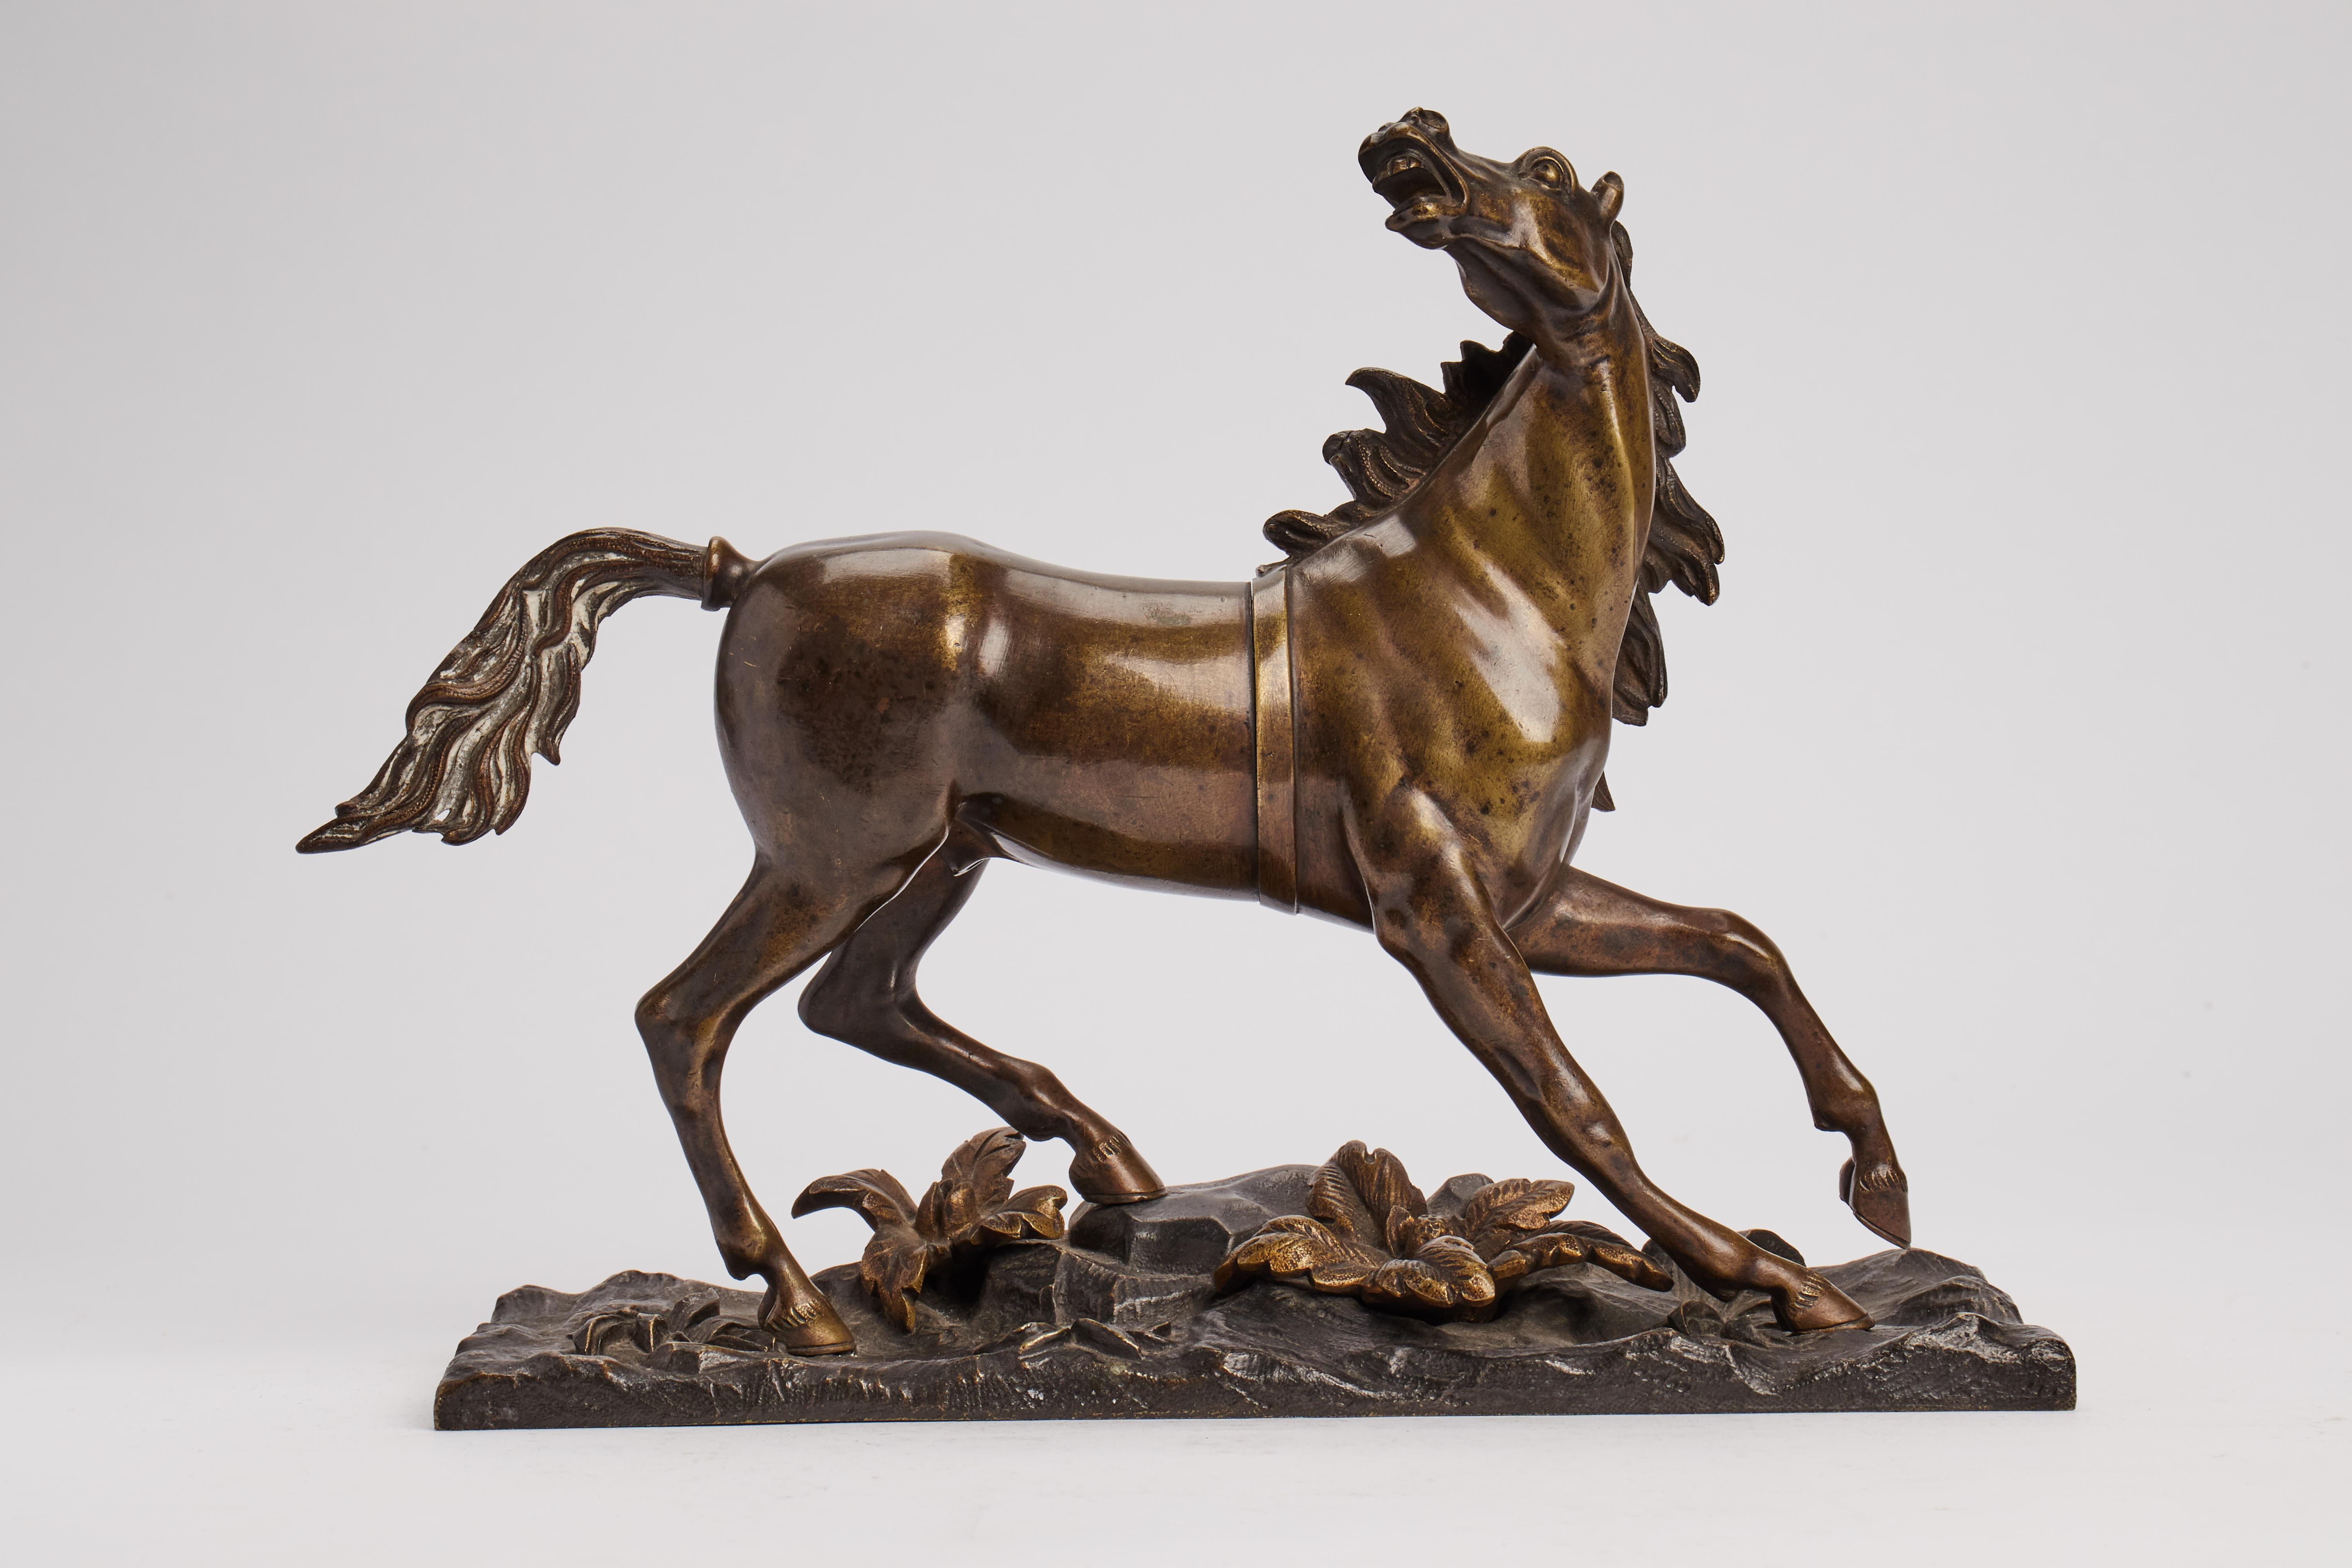 Bronzeskulptur, die ein sich bewegendes Pferd darstellt und auf einem rechteckigen Bronzesockel steht. Frankreich um 1890.